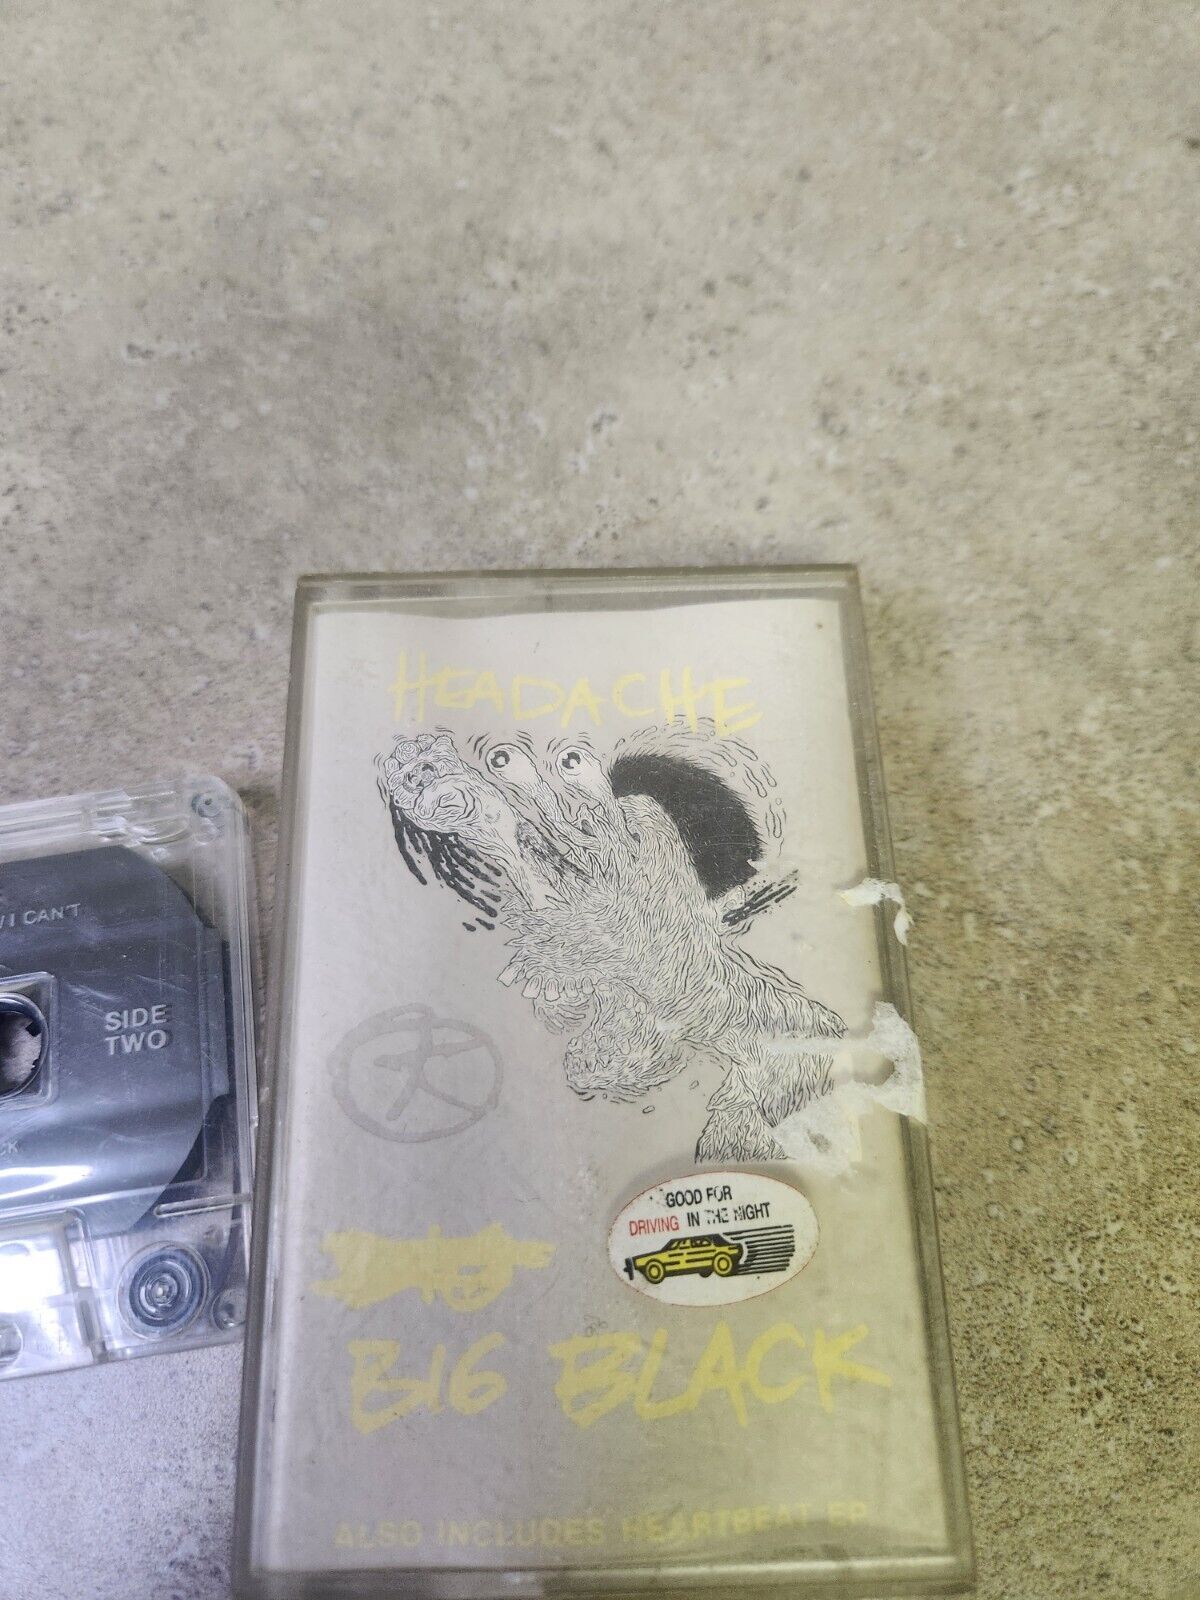 Big Black Headache Cassette Tape 1987